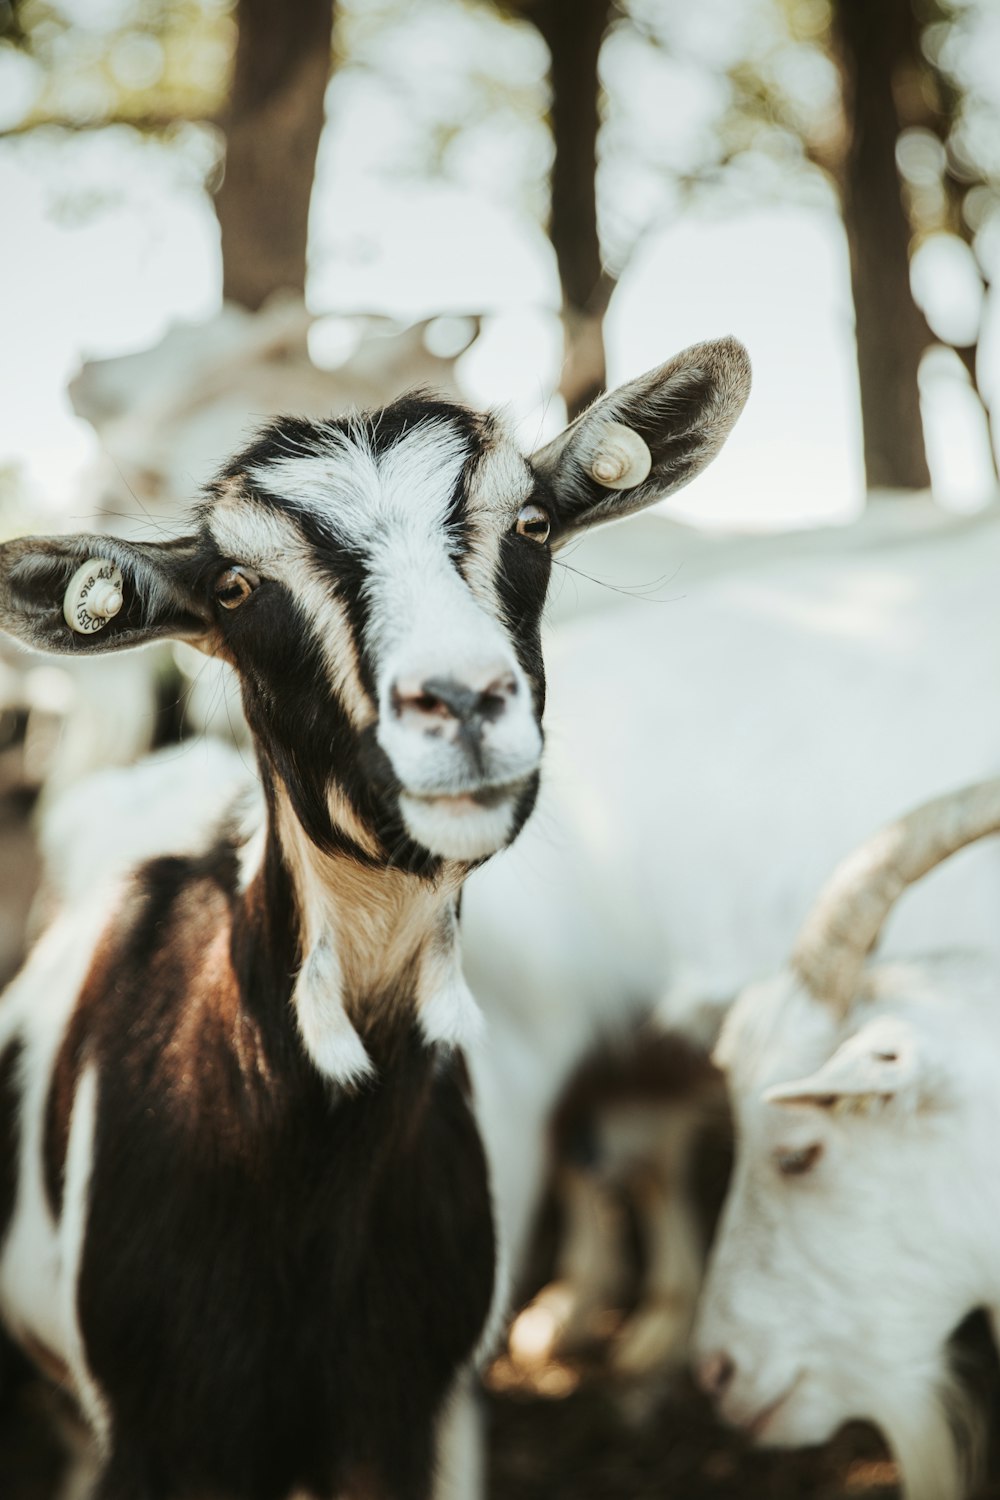 black and white goat in tilt shift lens